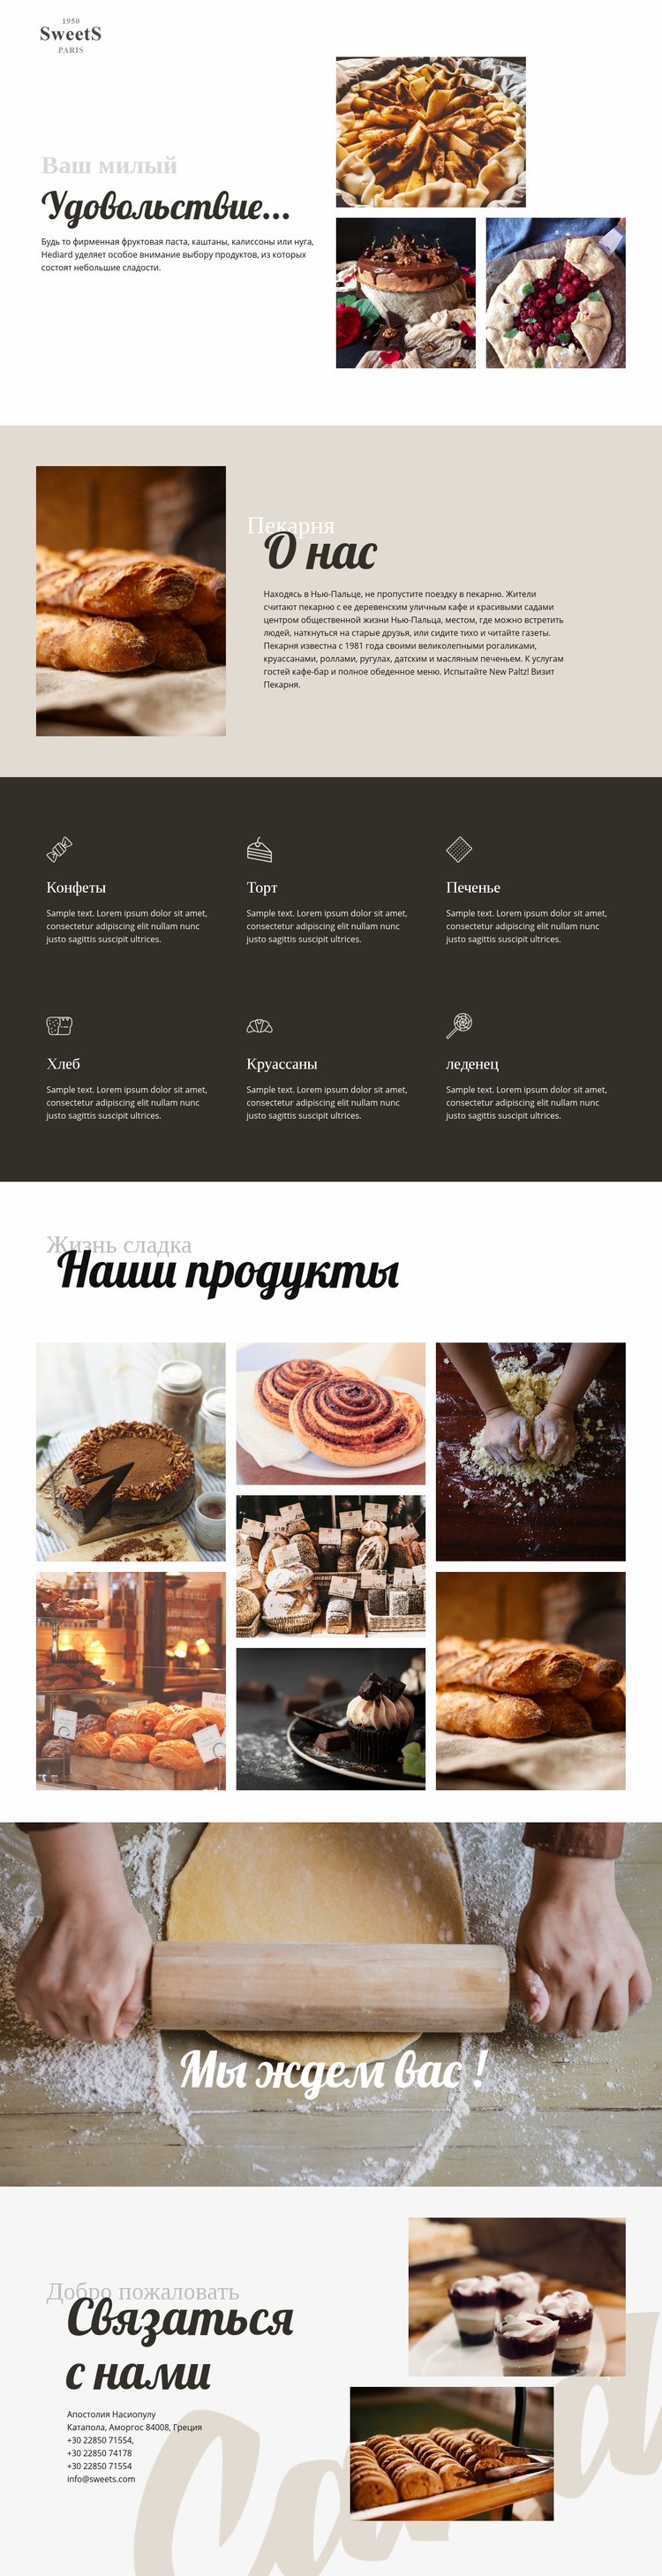 Торты и выпечка Дизайн сайта